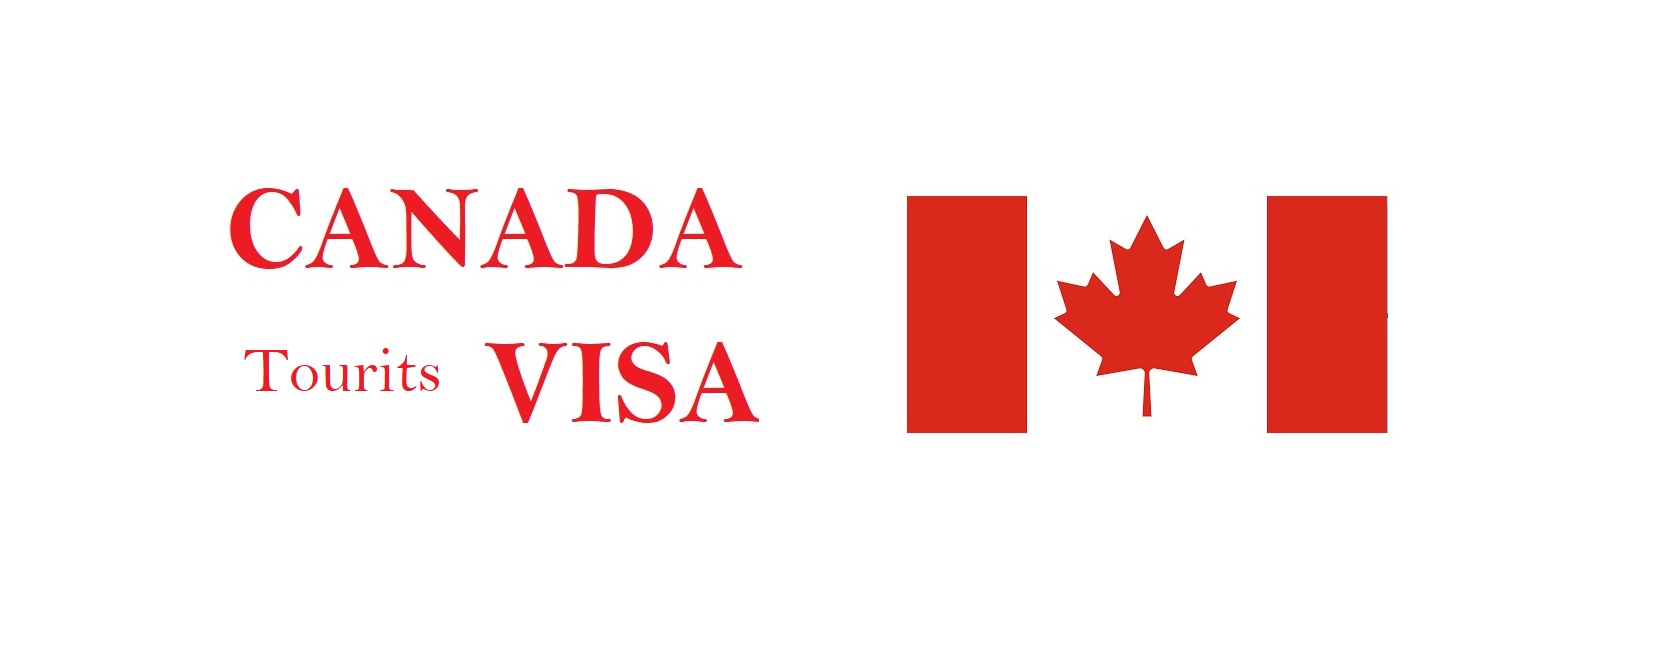 Canada Visa Policy